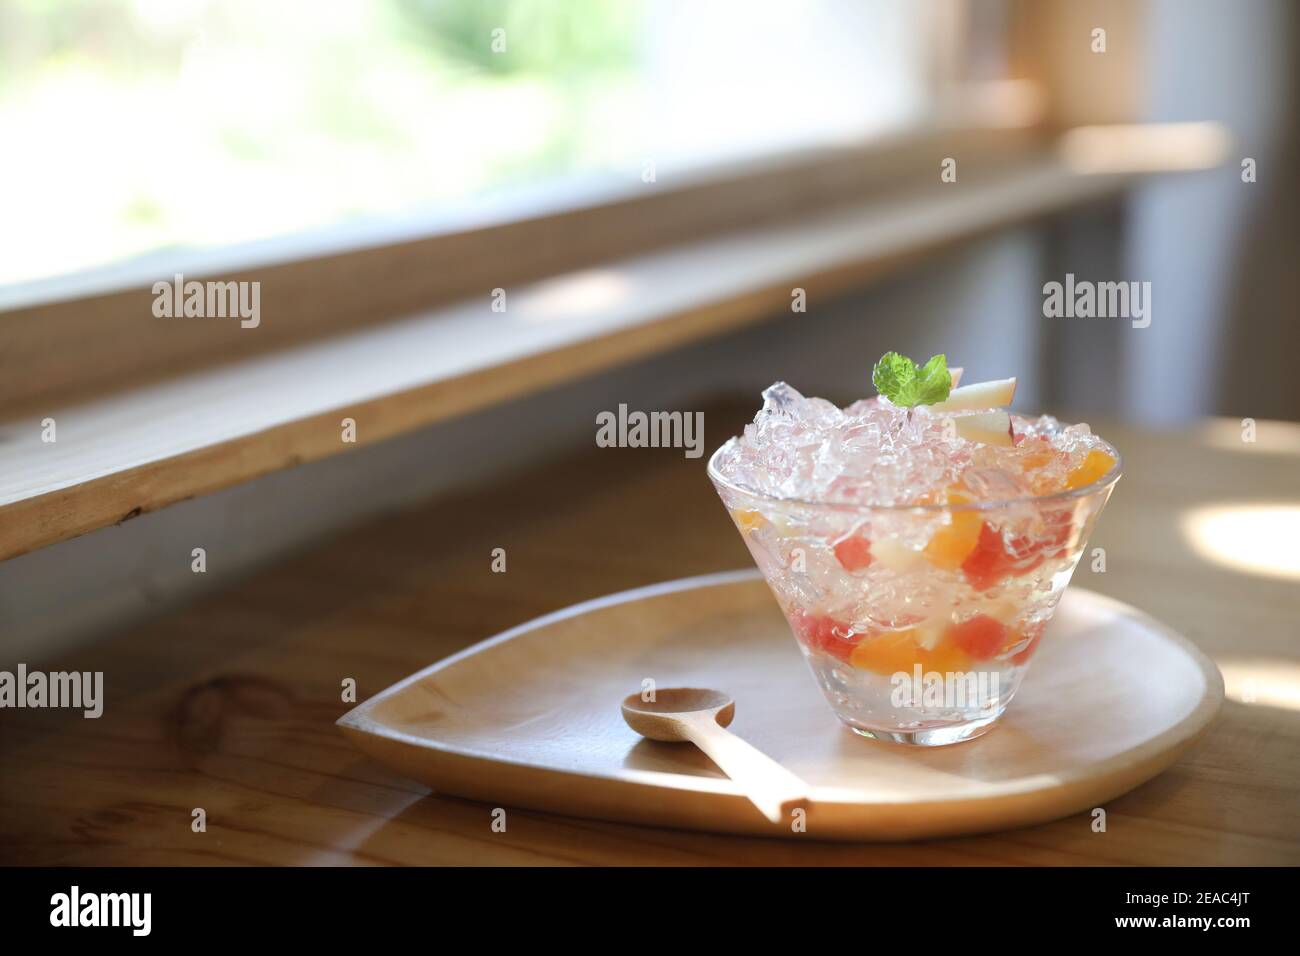 Japanisches Dessertgelee mit Obst auf Holzplatte Stockfoto